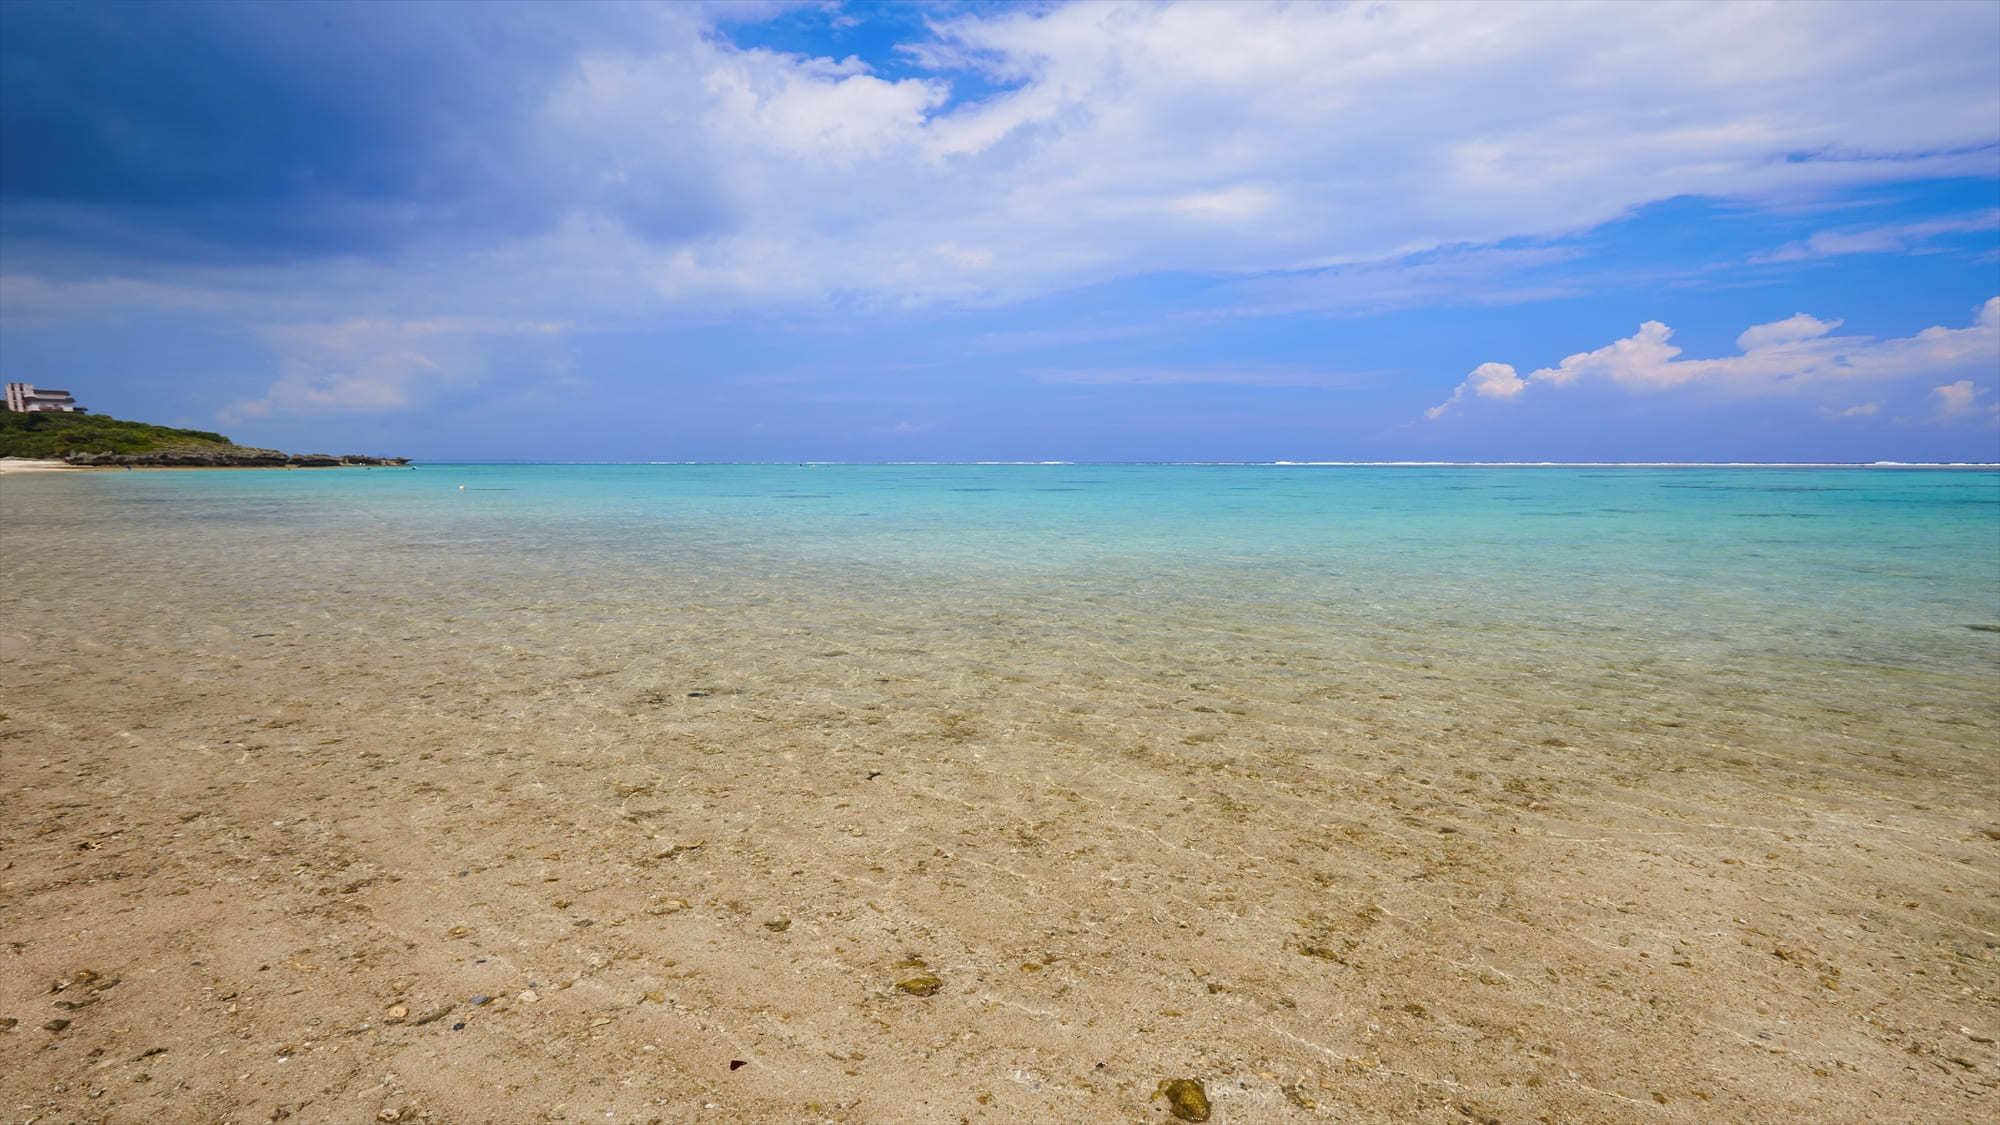 沖縄県民でも思わずテンションの上がるような、そんなきれいな砂浜と海が目の前に大きく広がります。